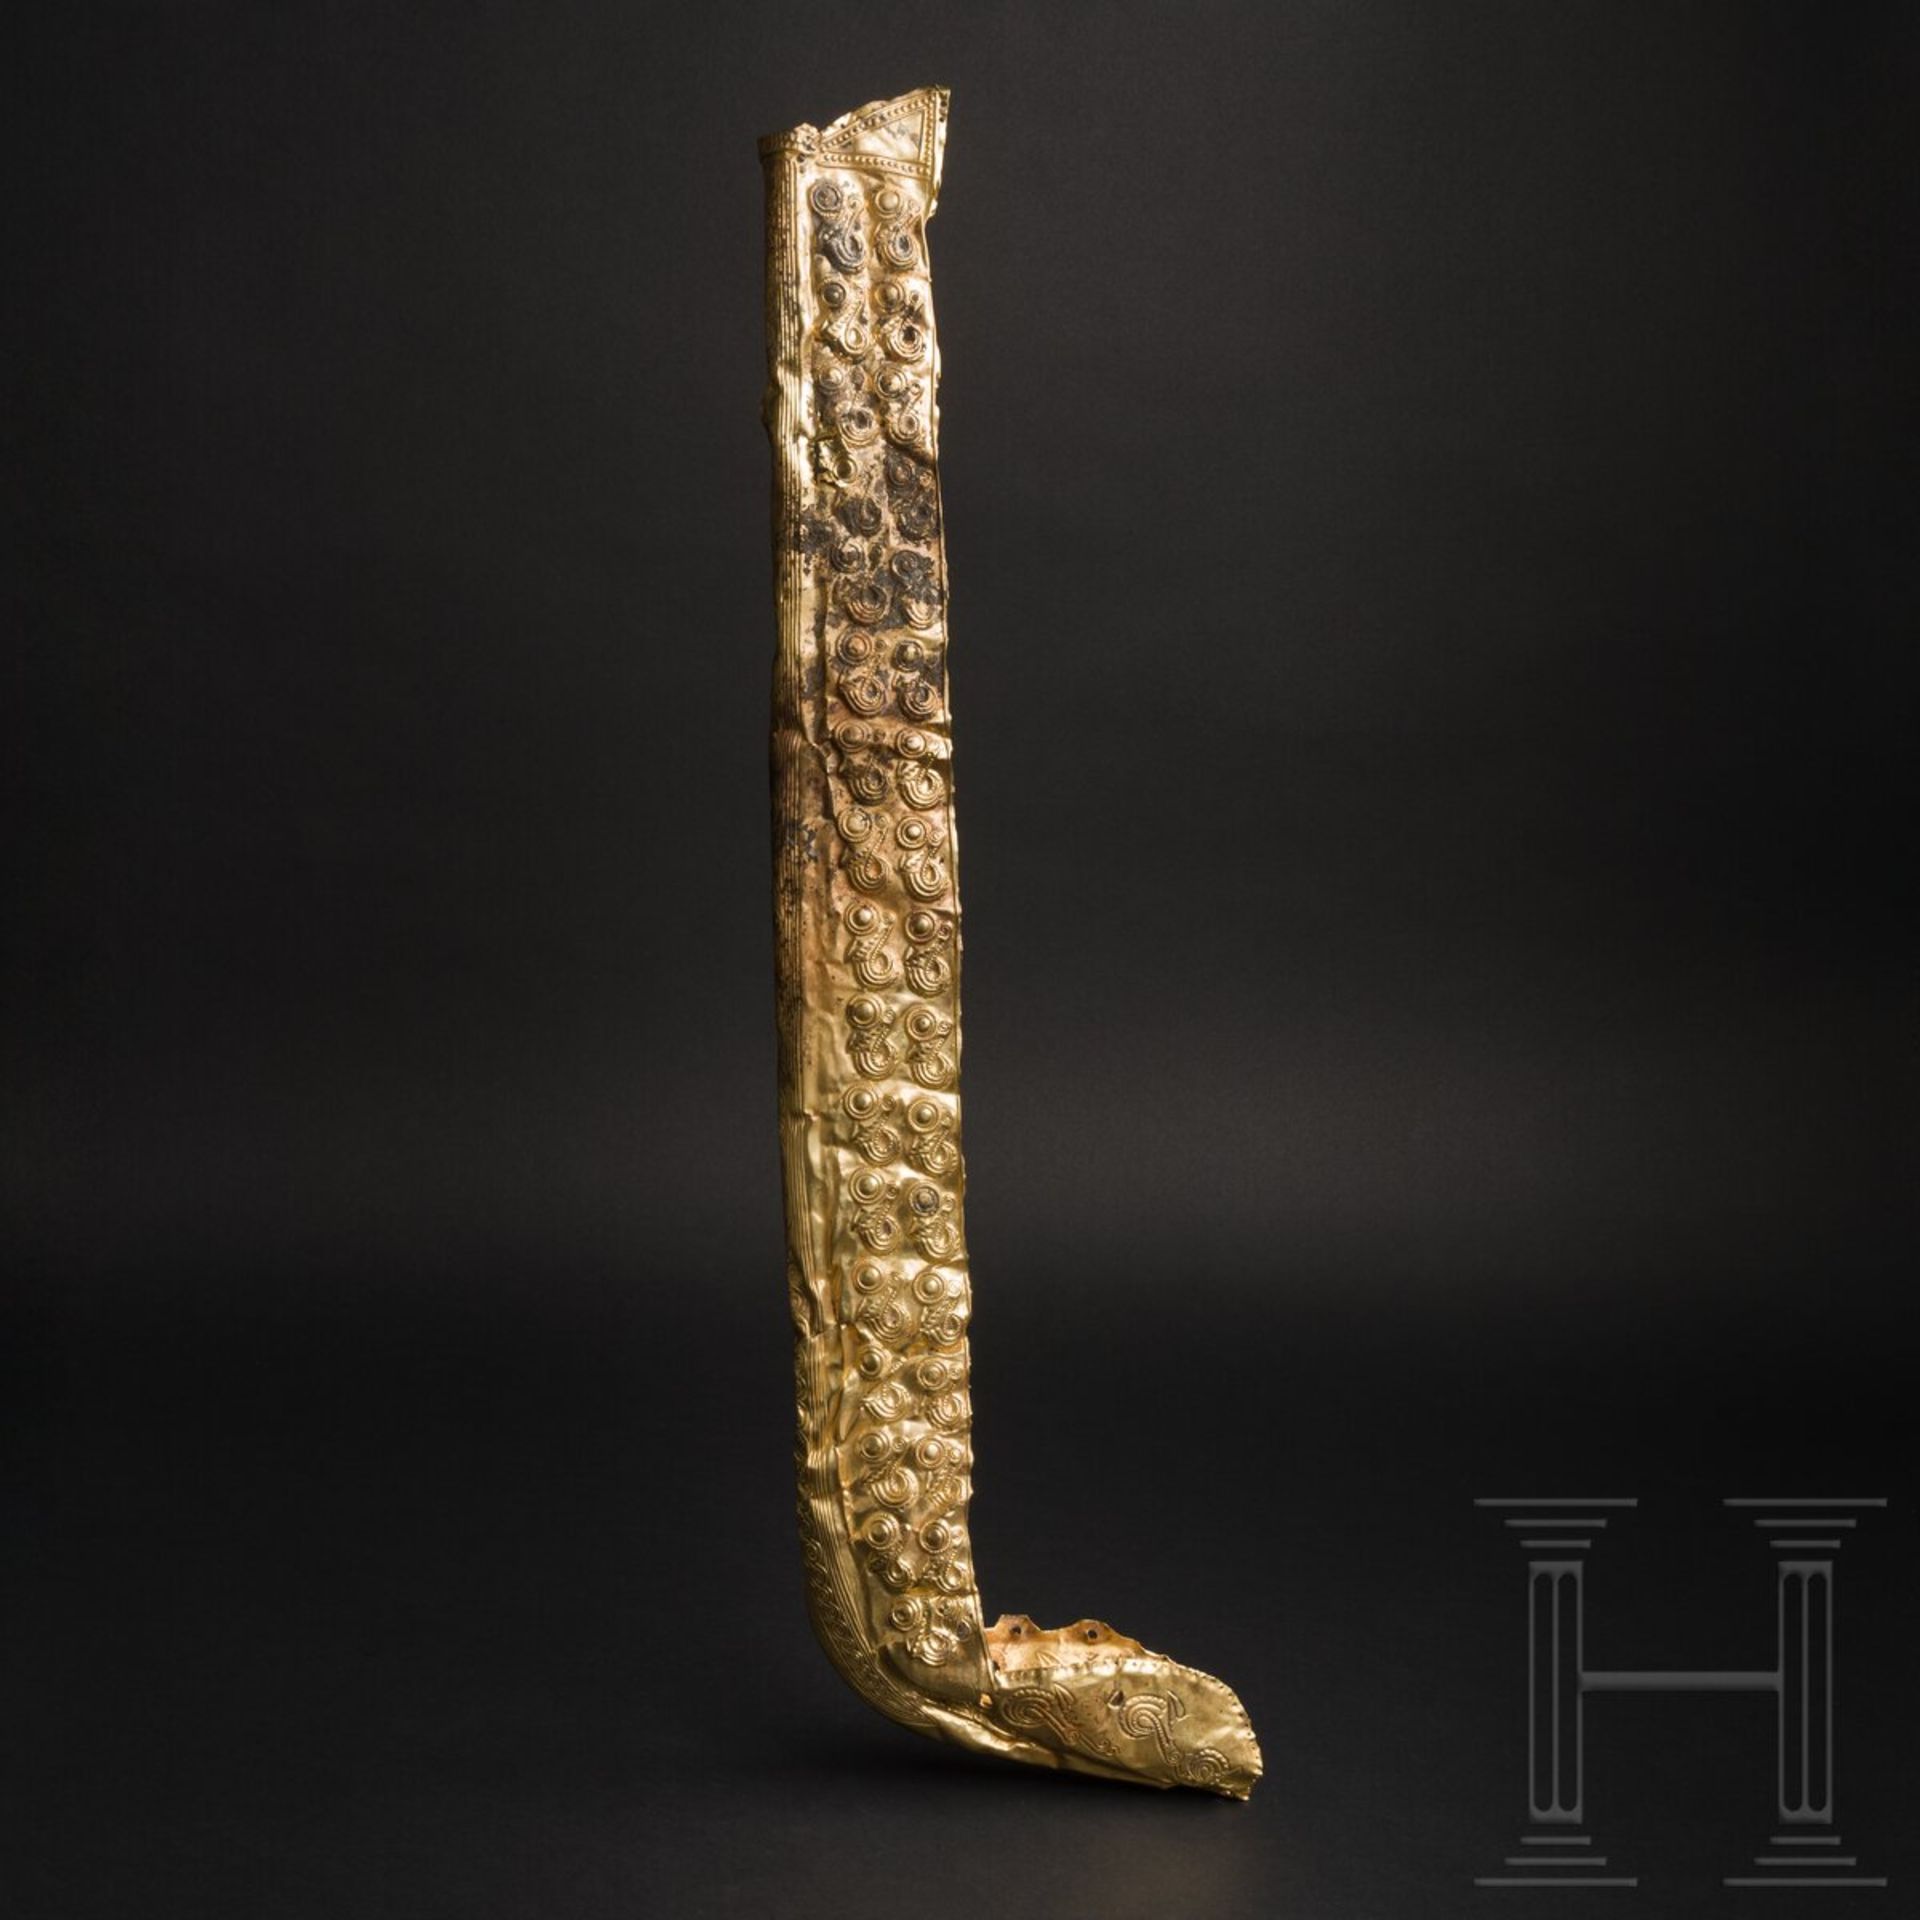 Goldener Kšcherbeschlag aus der Zeit der Perserkriege, persisch-achŠmenidisch, um 500 v. Chr.